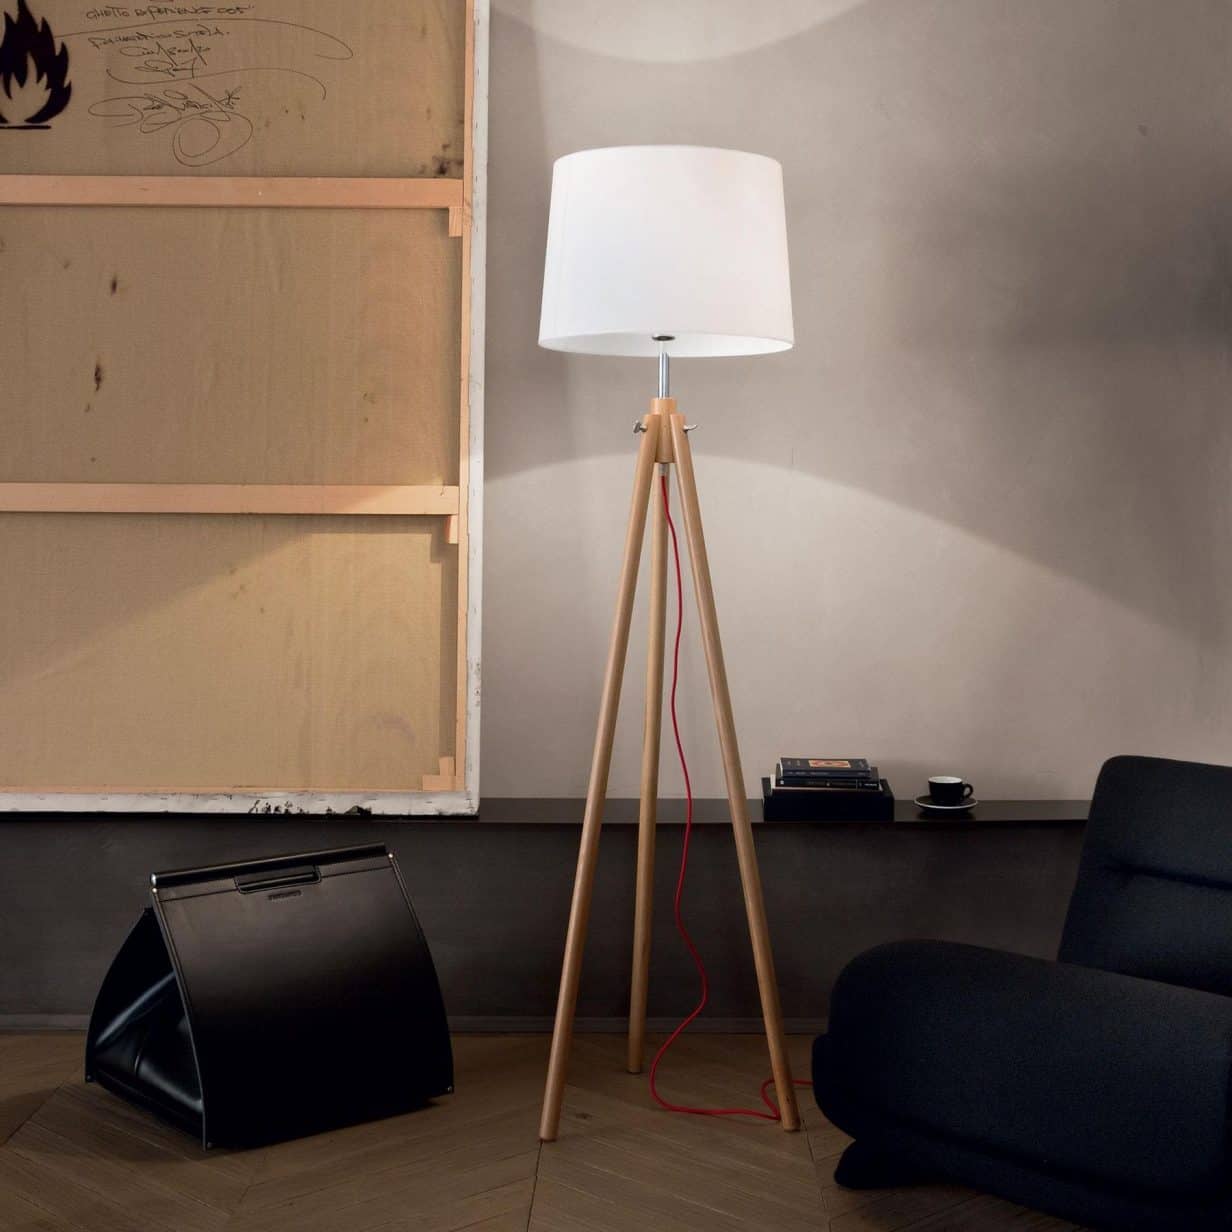 Lampe salon : apportez de la modernité à votre intérieur